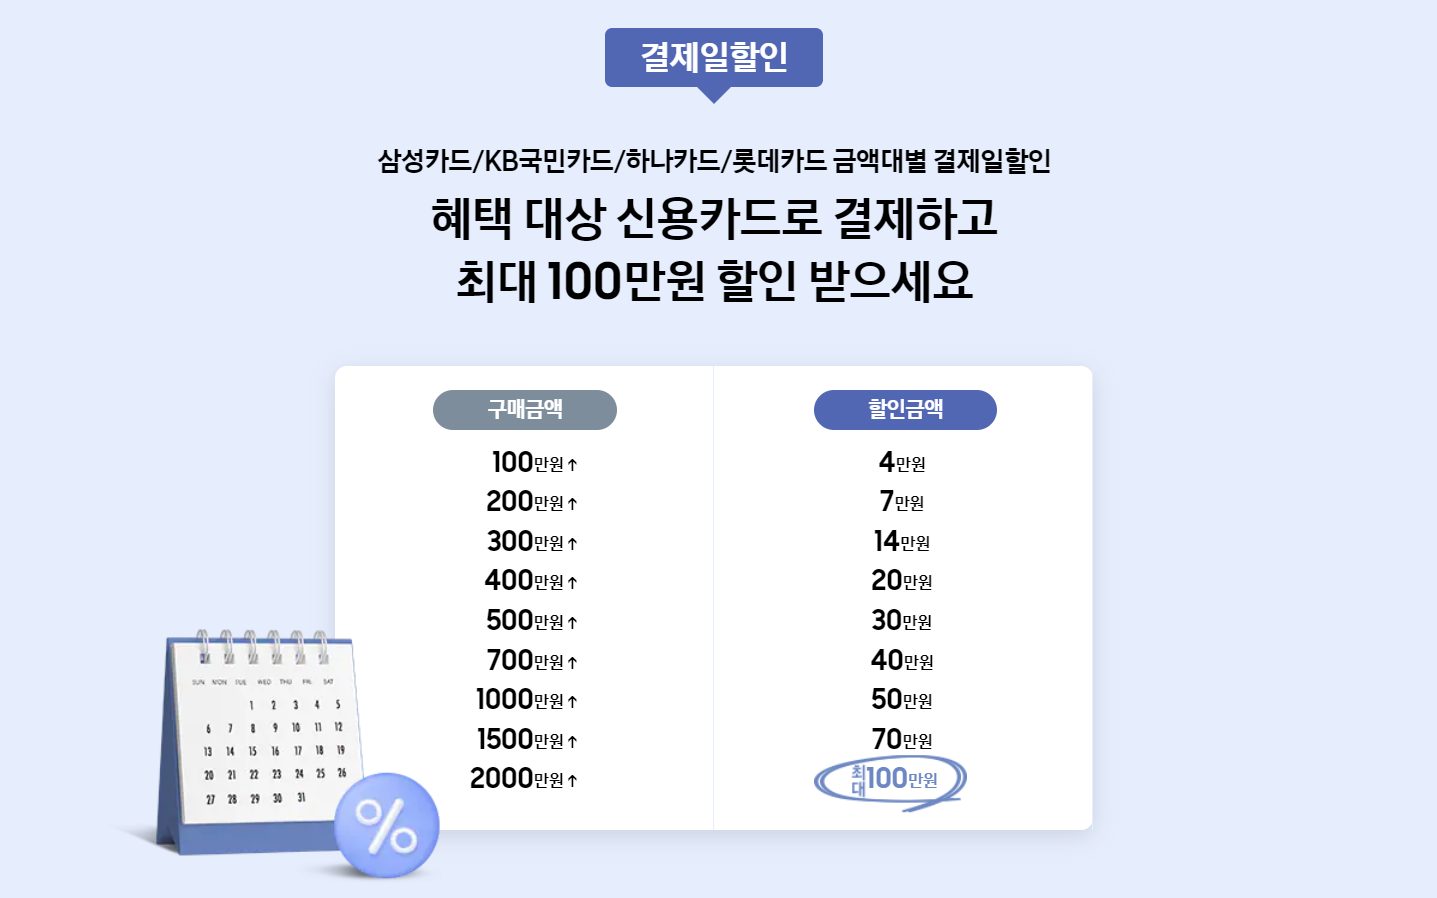 삼성닷컴 삼닷 슈퍼위크 구매혜택